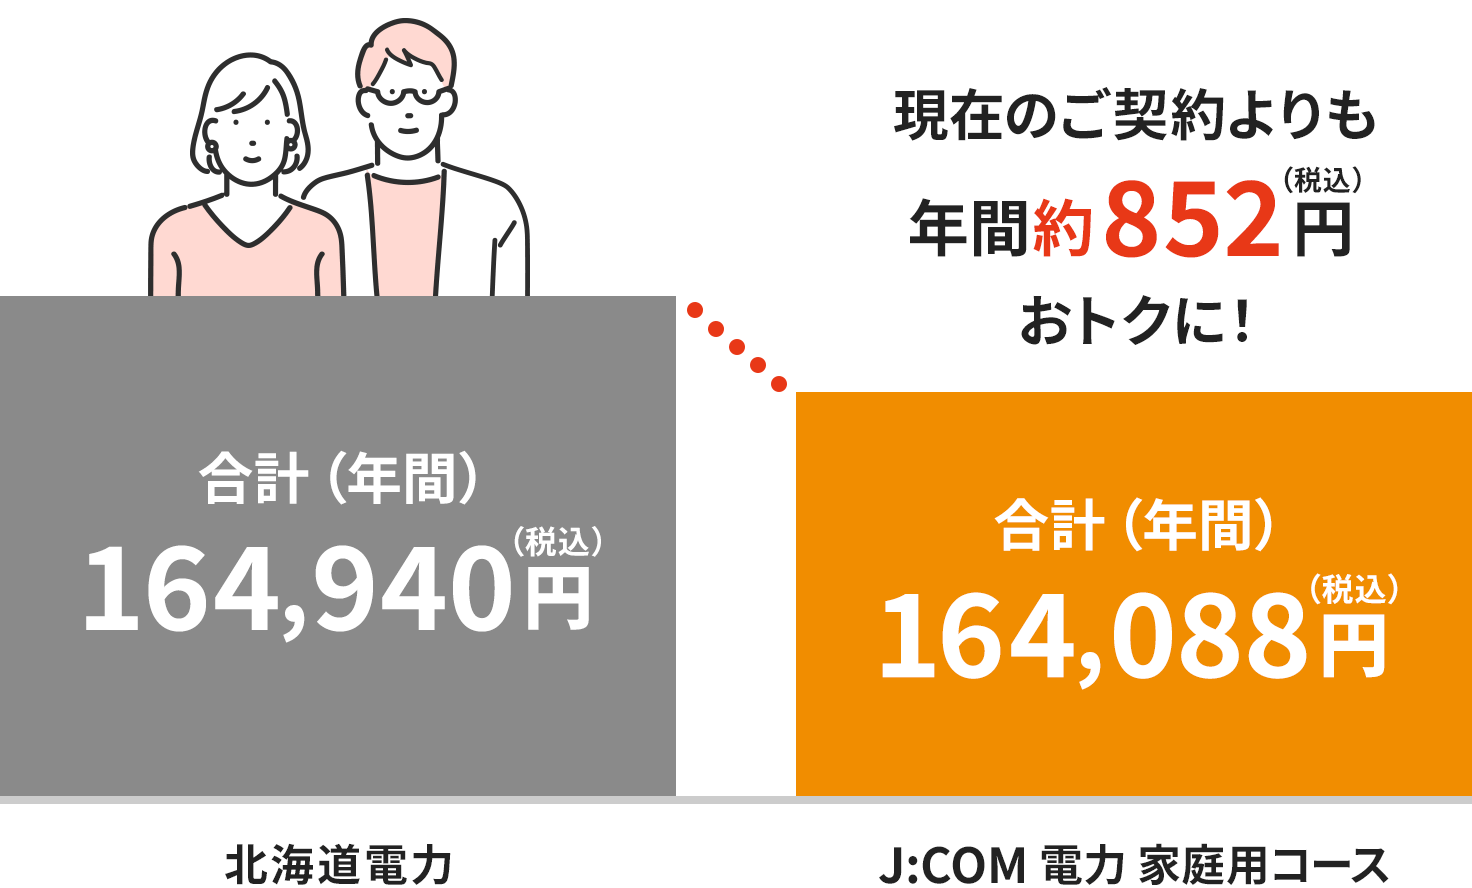 Hình ảnh các khoản phí tại khu vực Điện lực Hokkaido (dành cho hộ gia đình hai người)